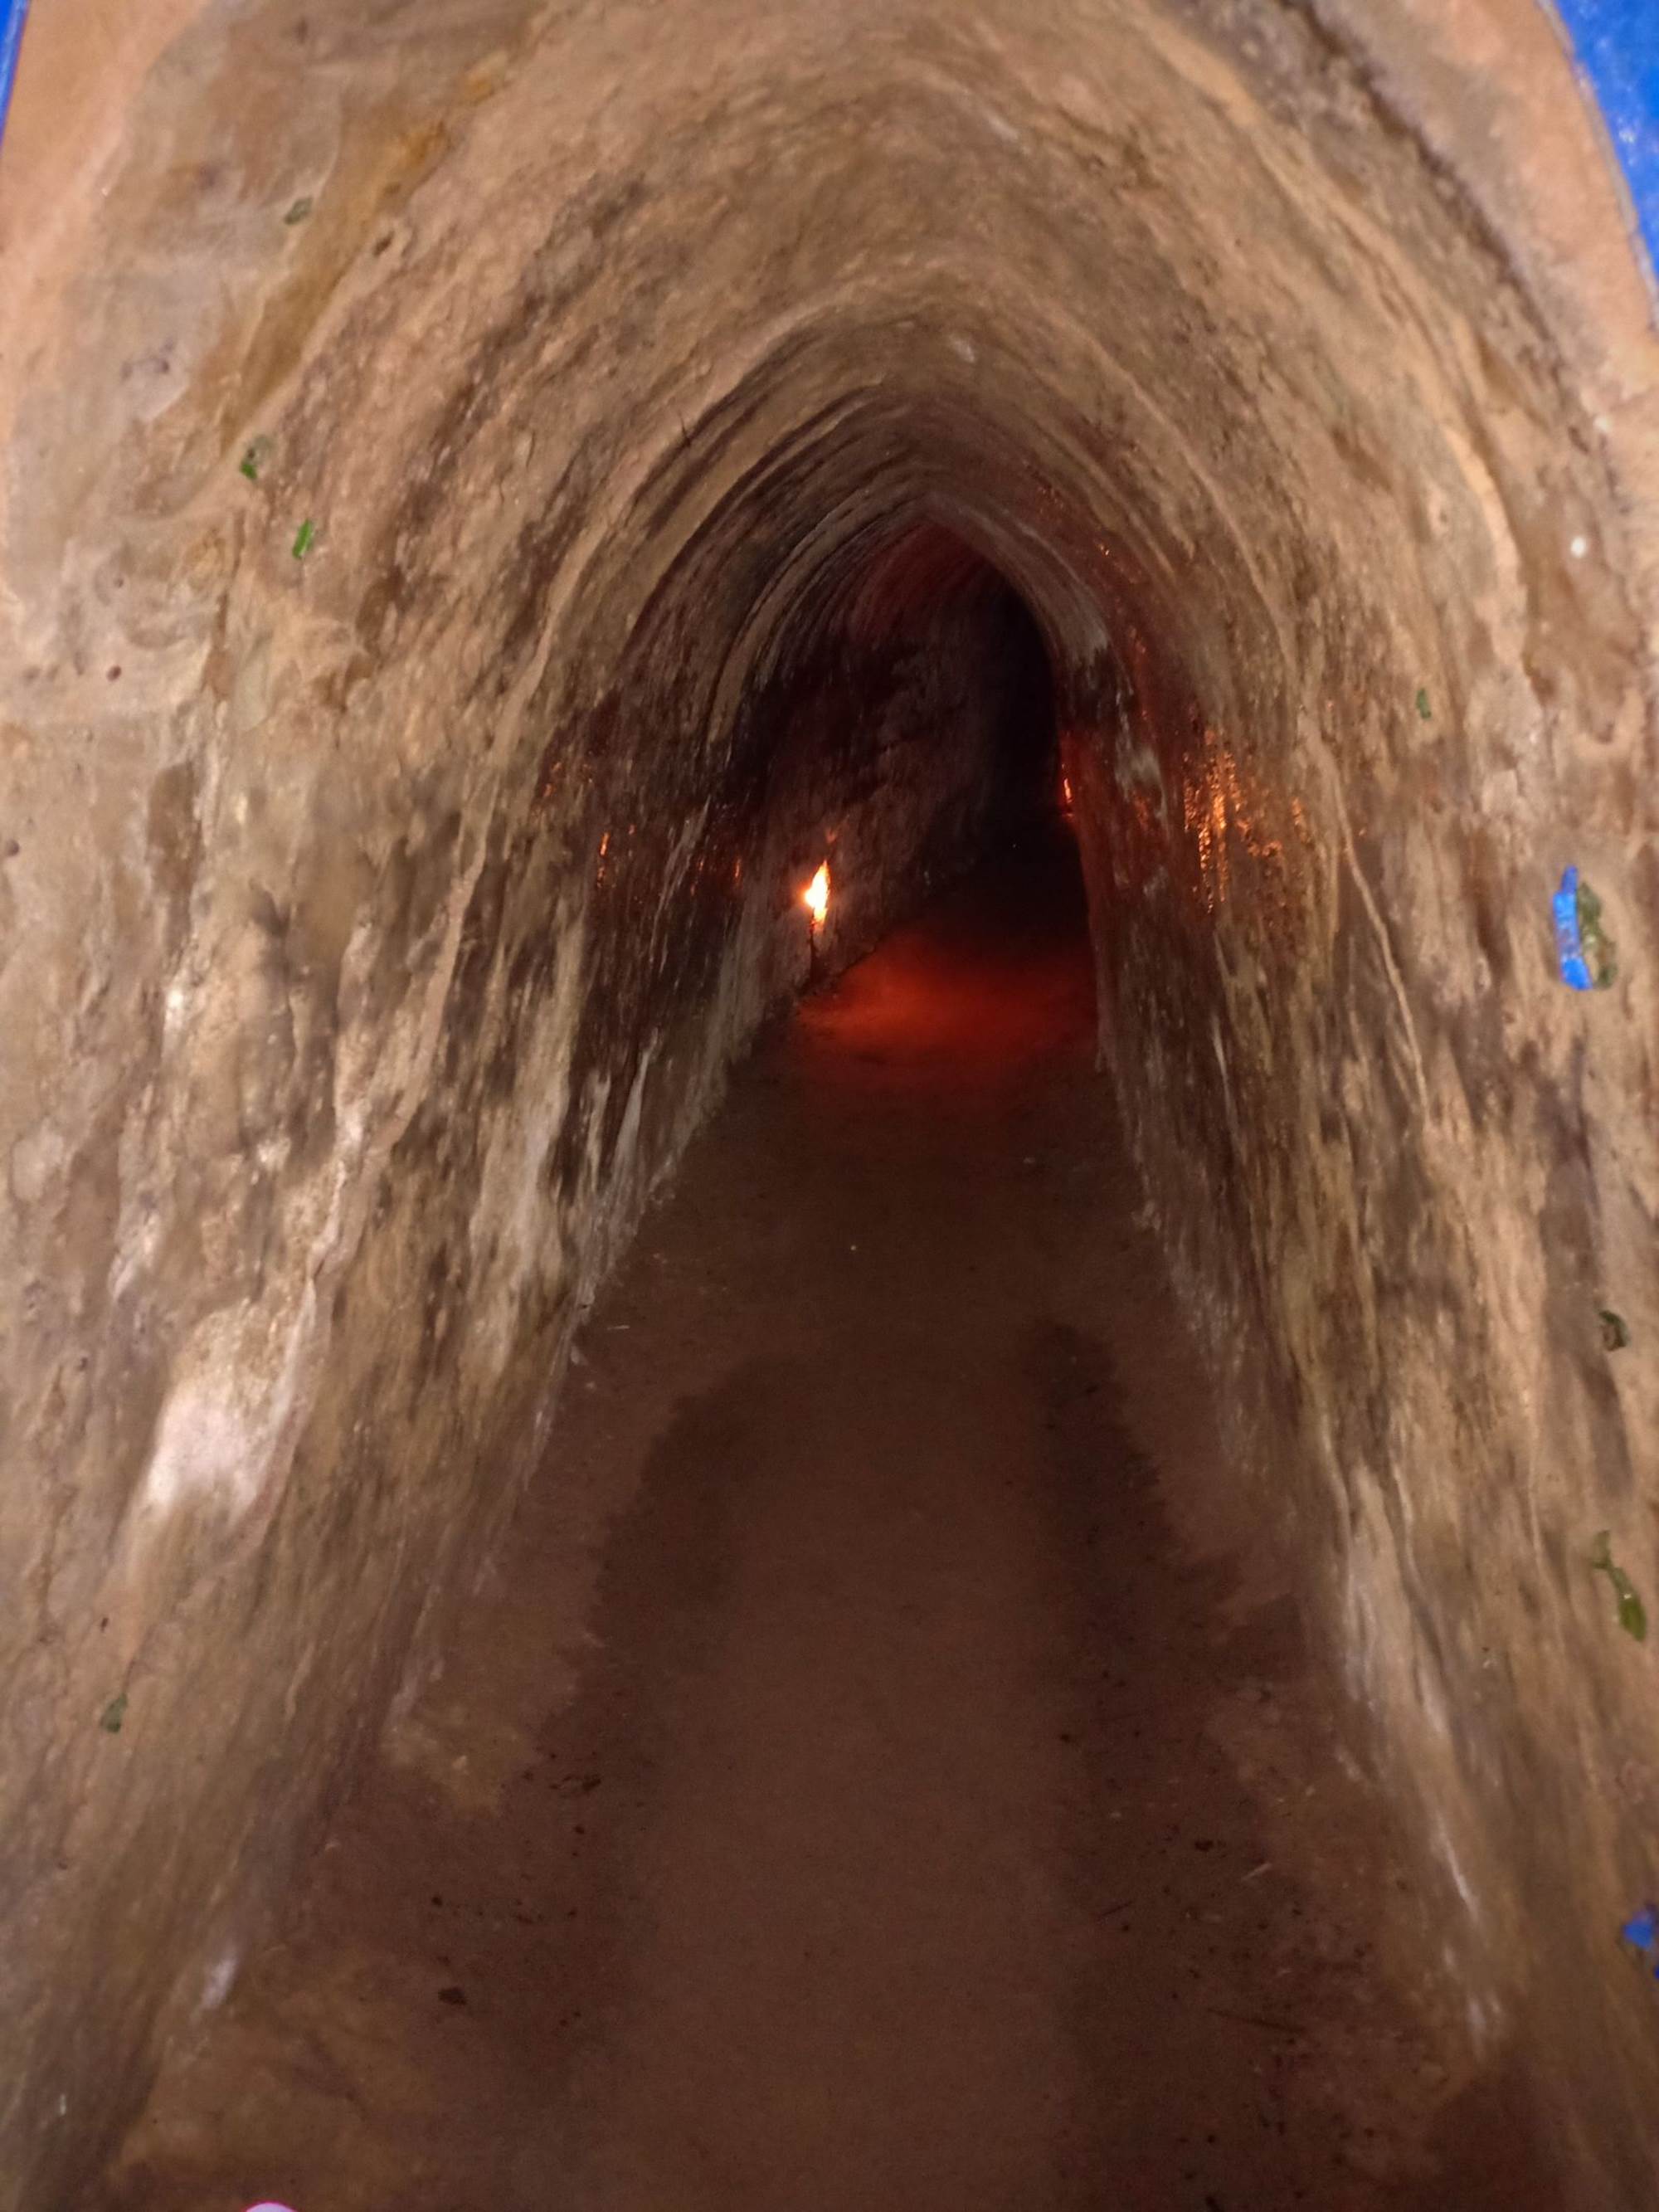 Địa đạo Củ Chi dài hơn 200km nhưng hiện chỉ một số ít được mở cho du khách tham quan, với đường hầm mở rộng để dễ dàng đi lại và đèn cũng được thắp sáng.